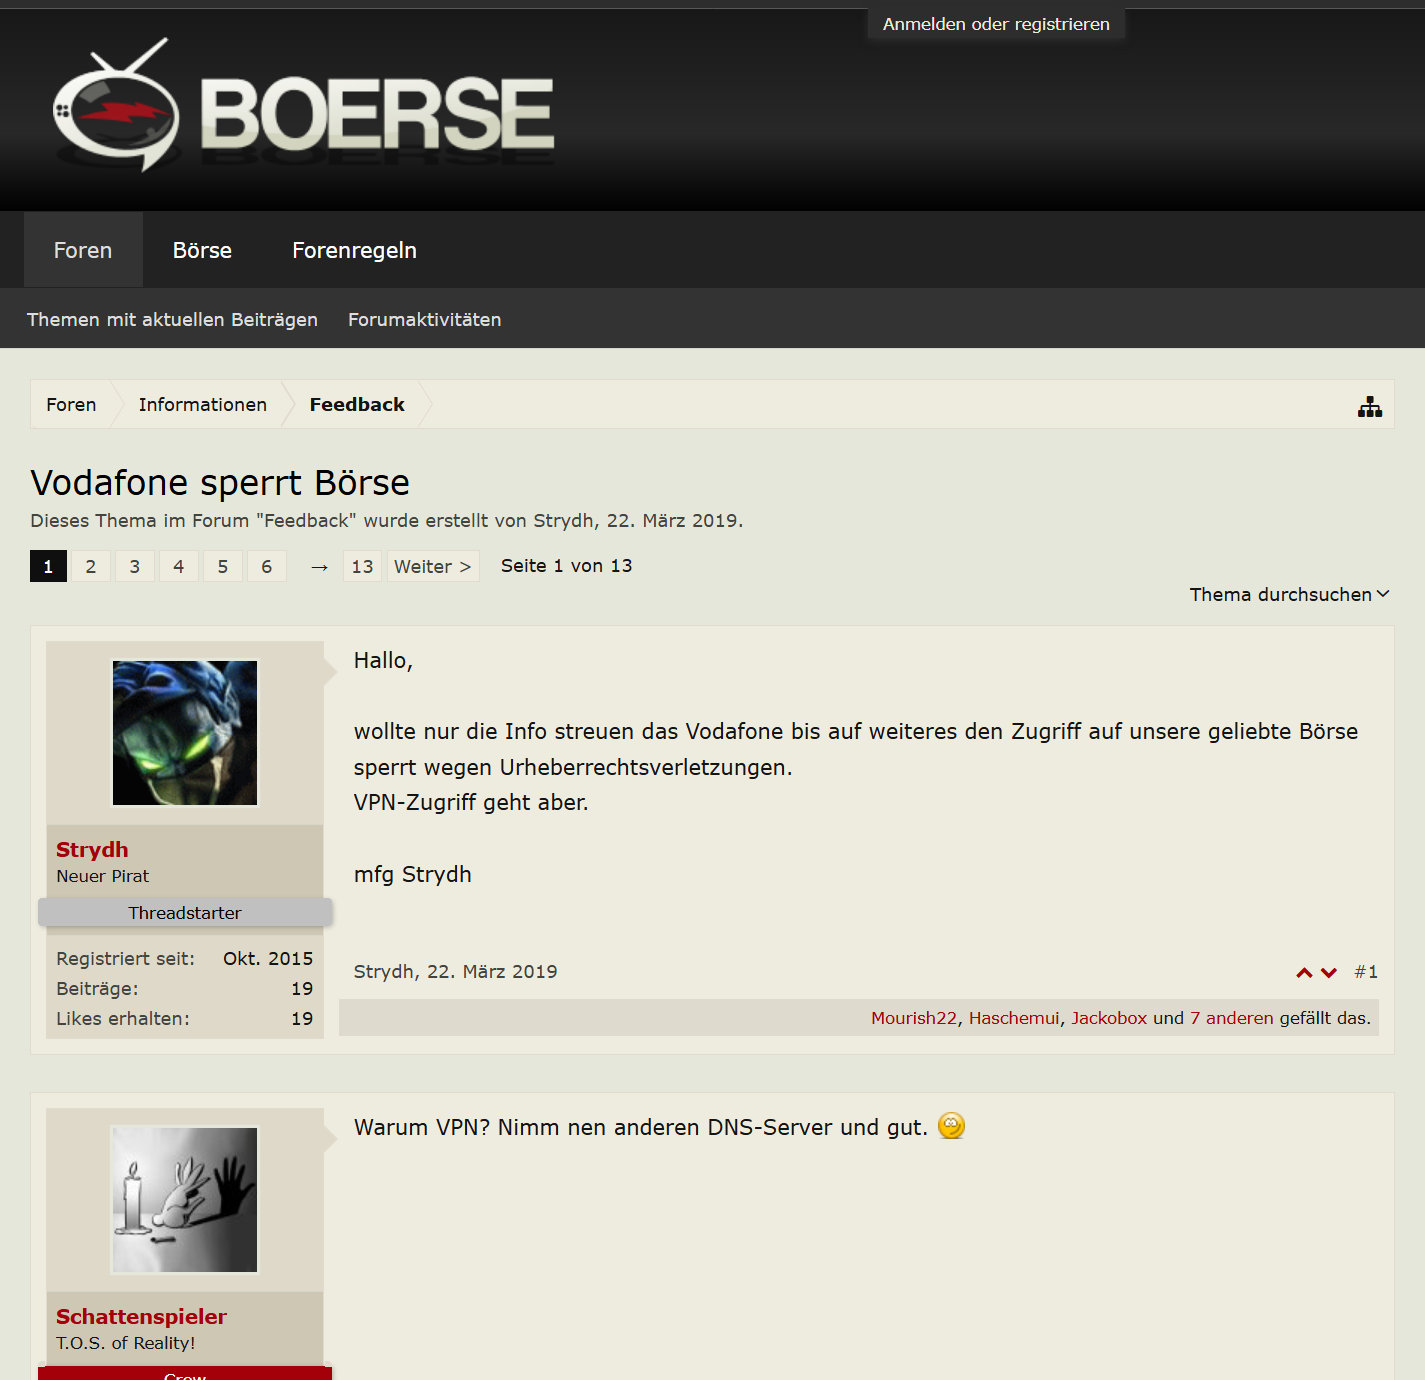 Screenshot_2019-04-06 Vodafone sperrt Börse Boerse to.png